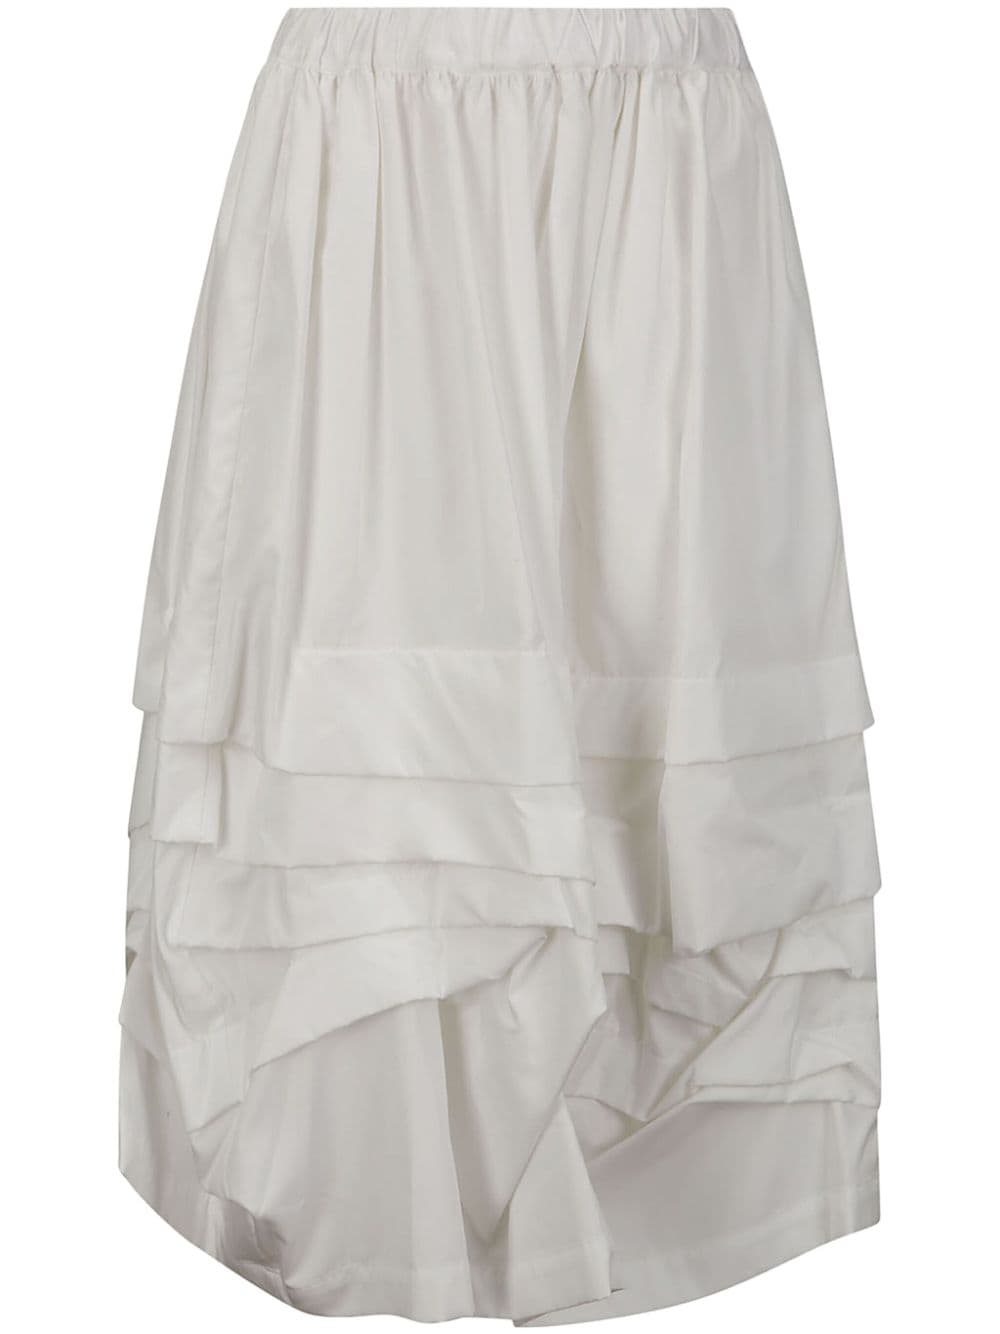 ruffled layered skirt